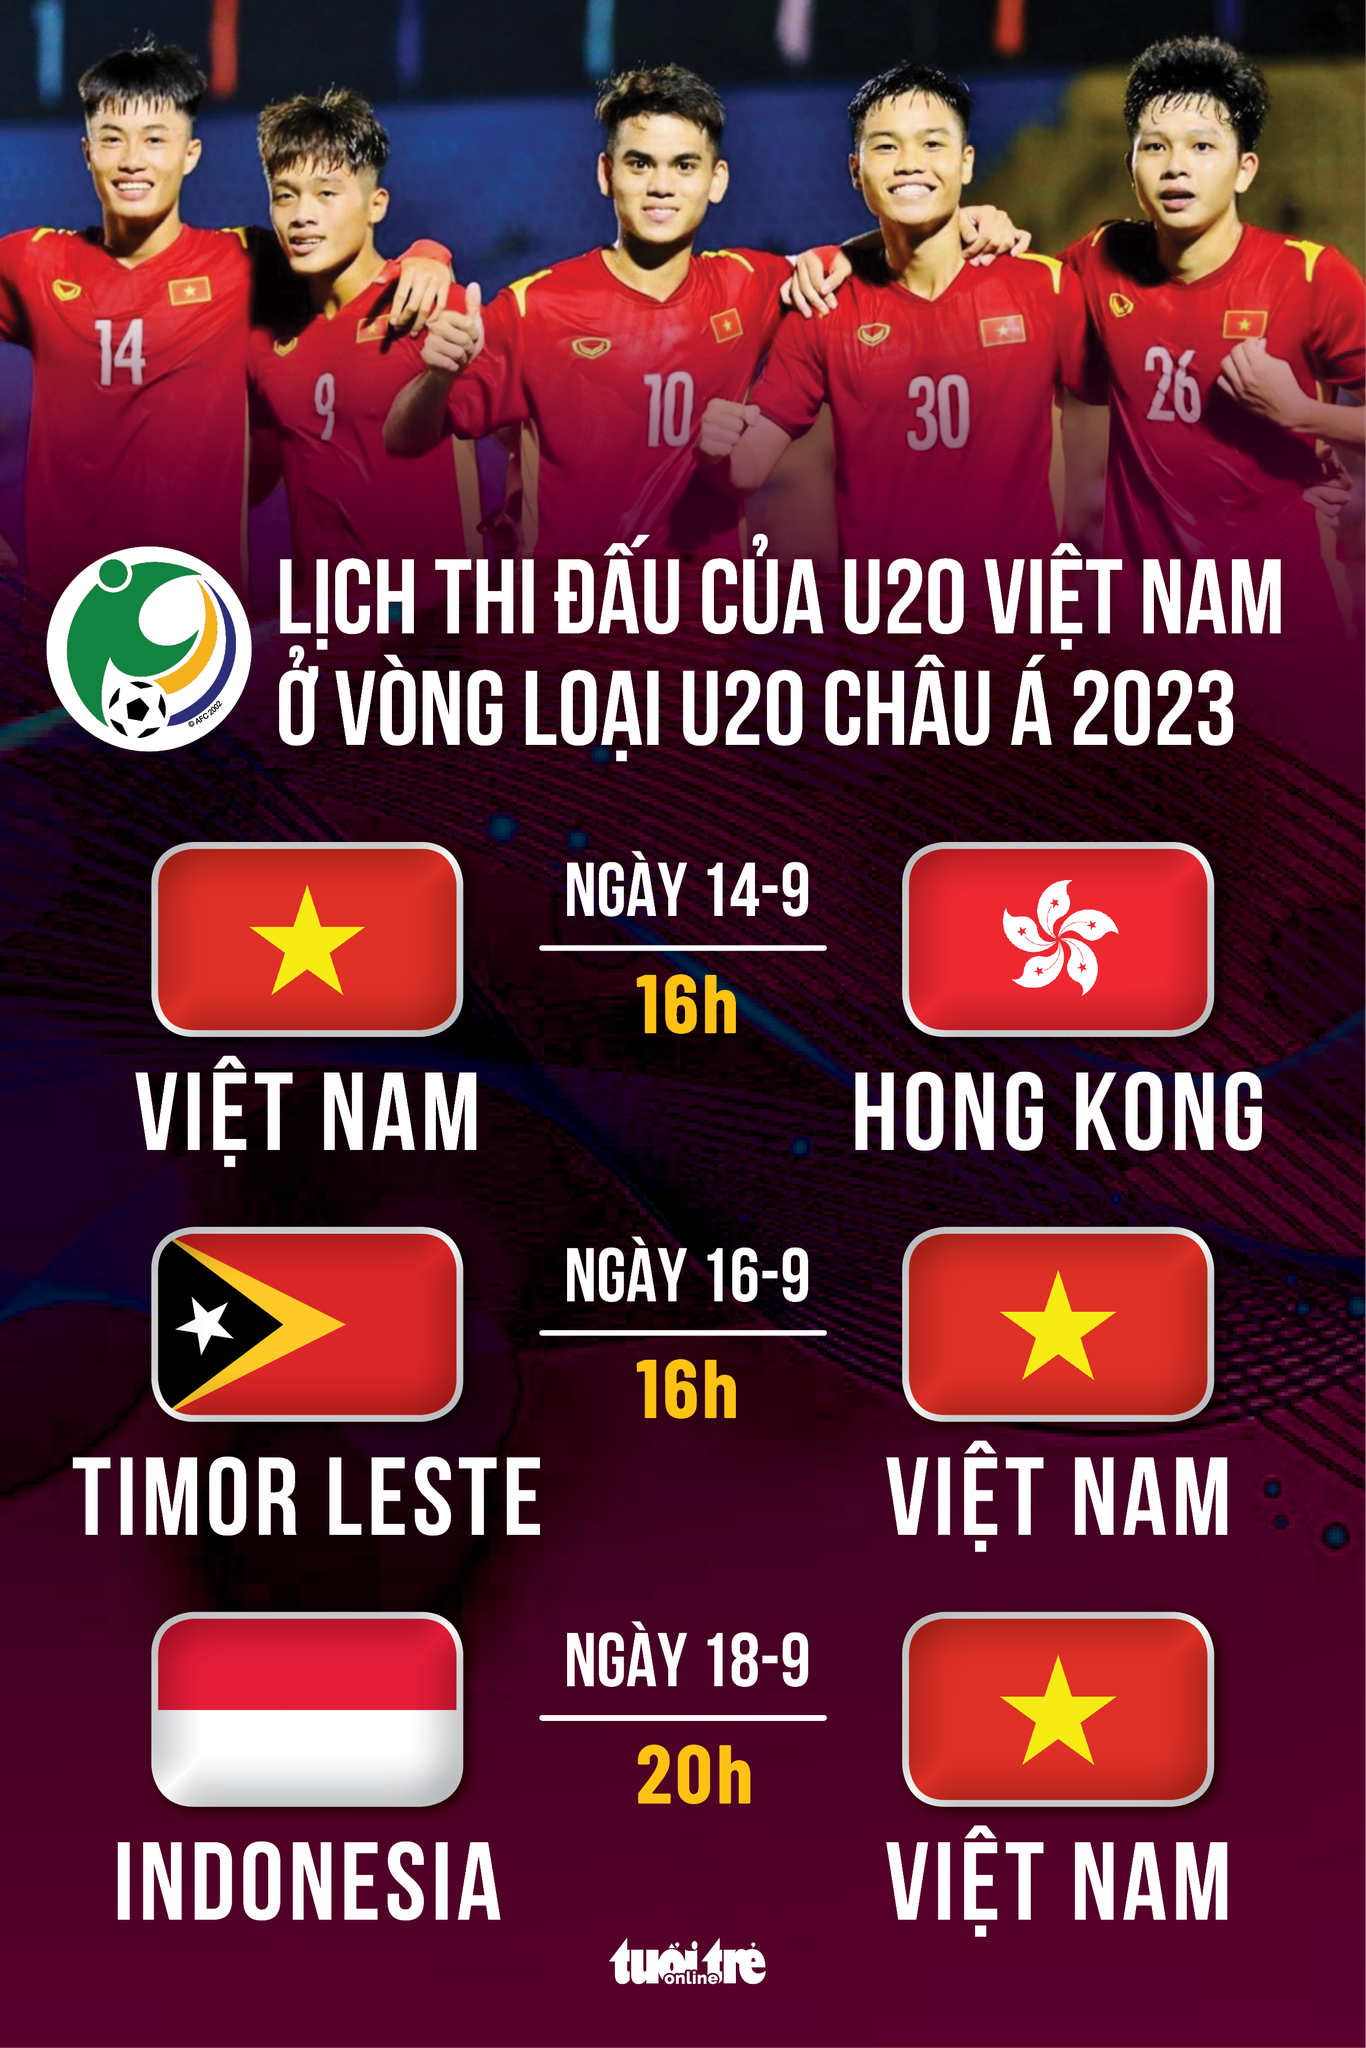 Lịch thi đấu của U20 Việt Nam tại vòng loại U20 châu Á 2022